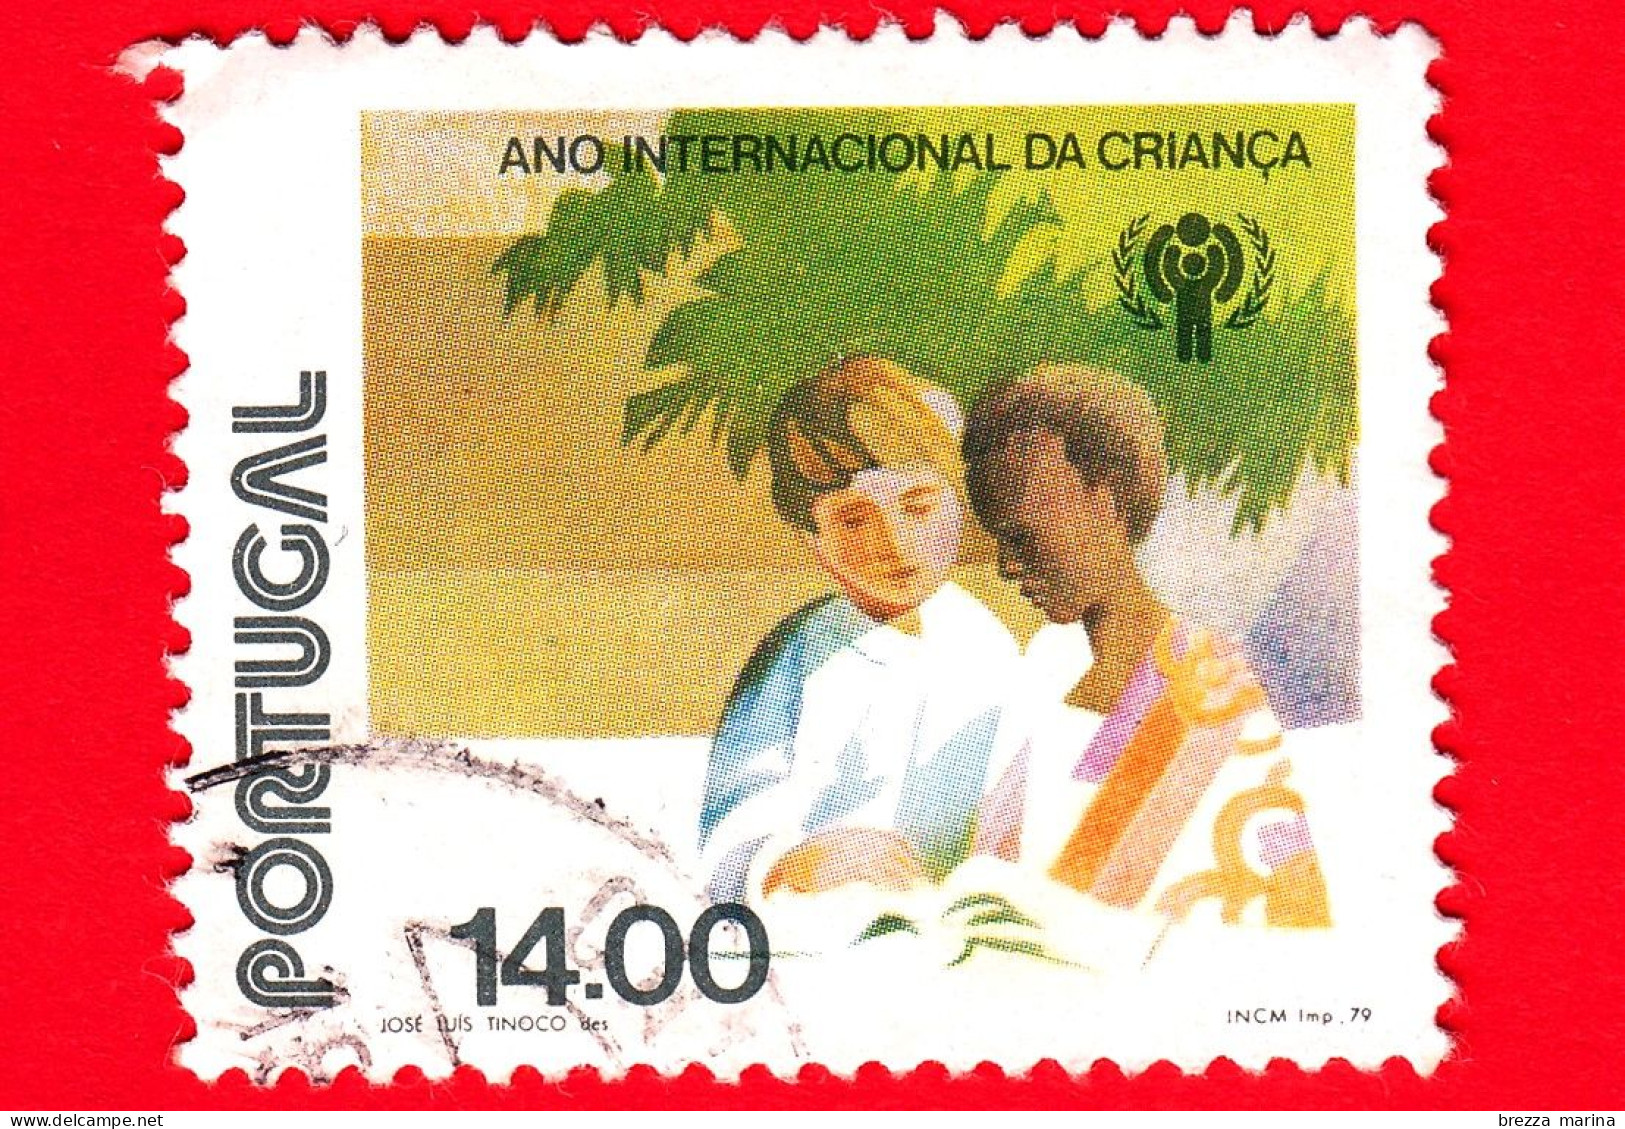 PORTOGALLO - Usato - 1979 - Anno Internazionale Dei Bambini - Ragazzo Bianco E Ragazzo Nero - 14.00 - Gebruikt